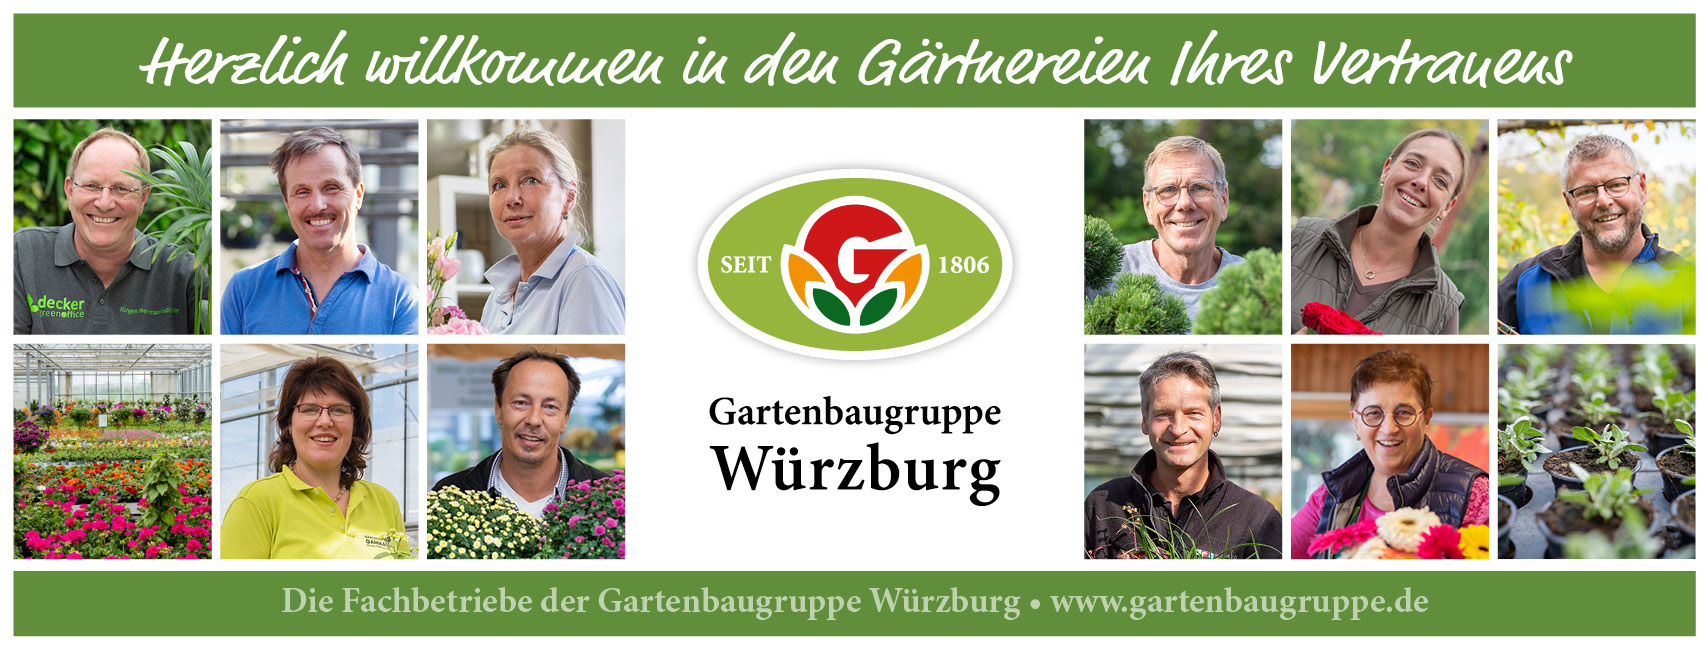 Die Gartenbaugruppe Würzburg – Ihre Gärtnereien des Vertrauens